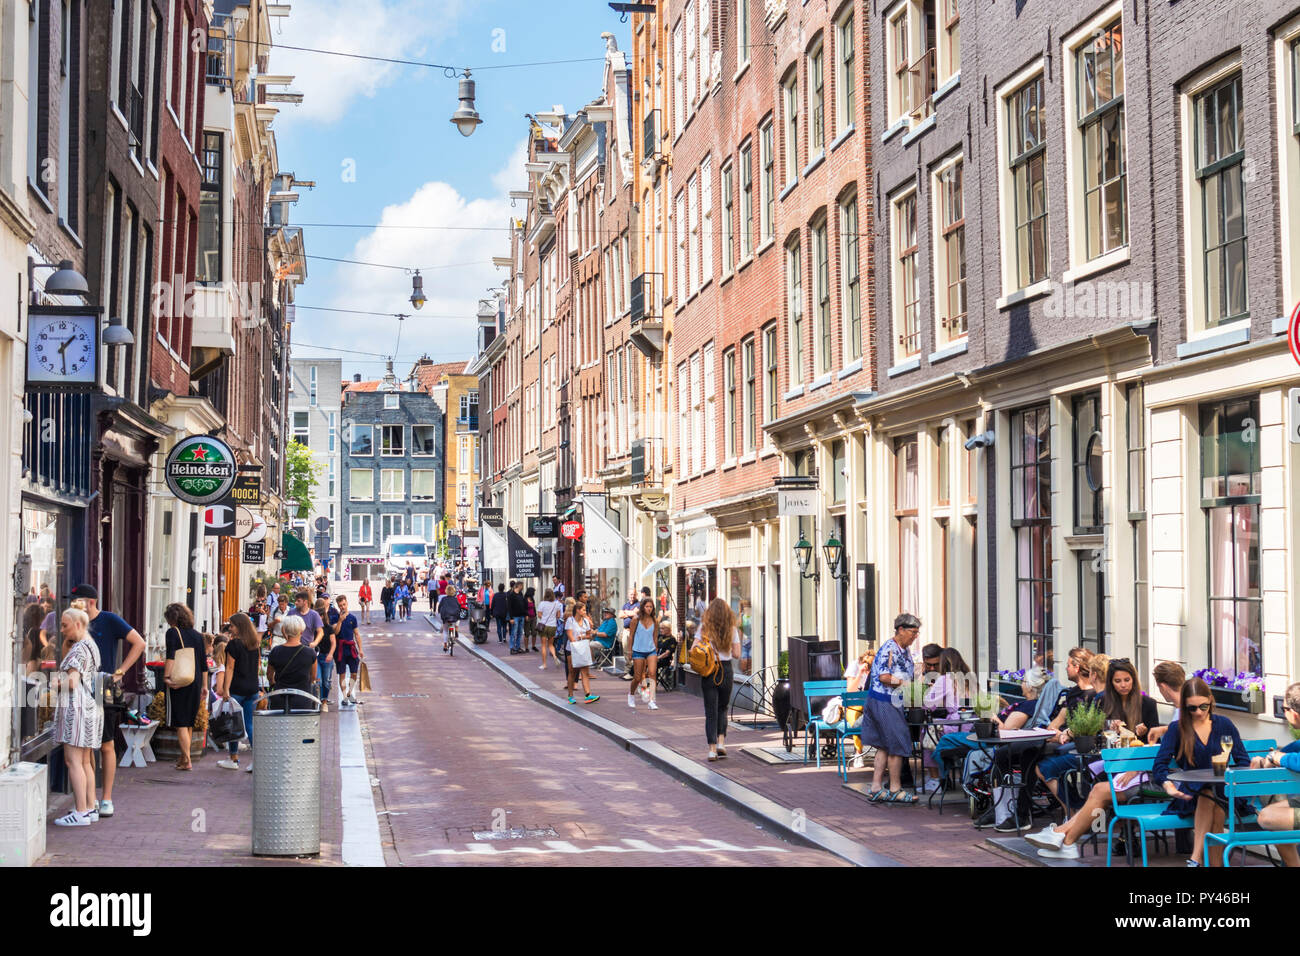 Amsterdam Reestraat parte de la moderna zona de nueve calles de moda, tiendas, restaurantes, cafeterías, librerías, tiendas de interiorismo de Amsterdam de la UE Foto de stock